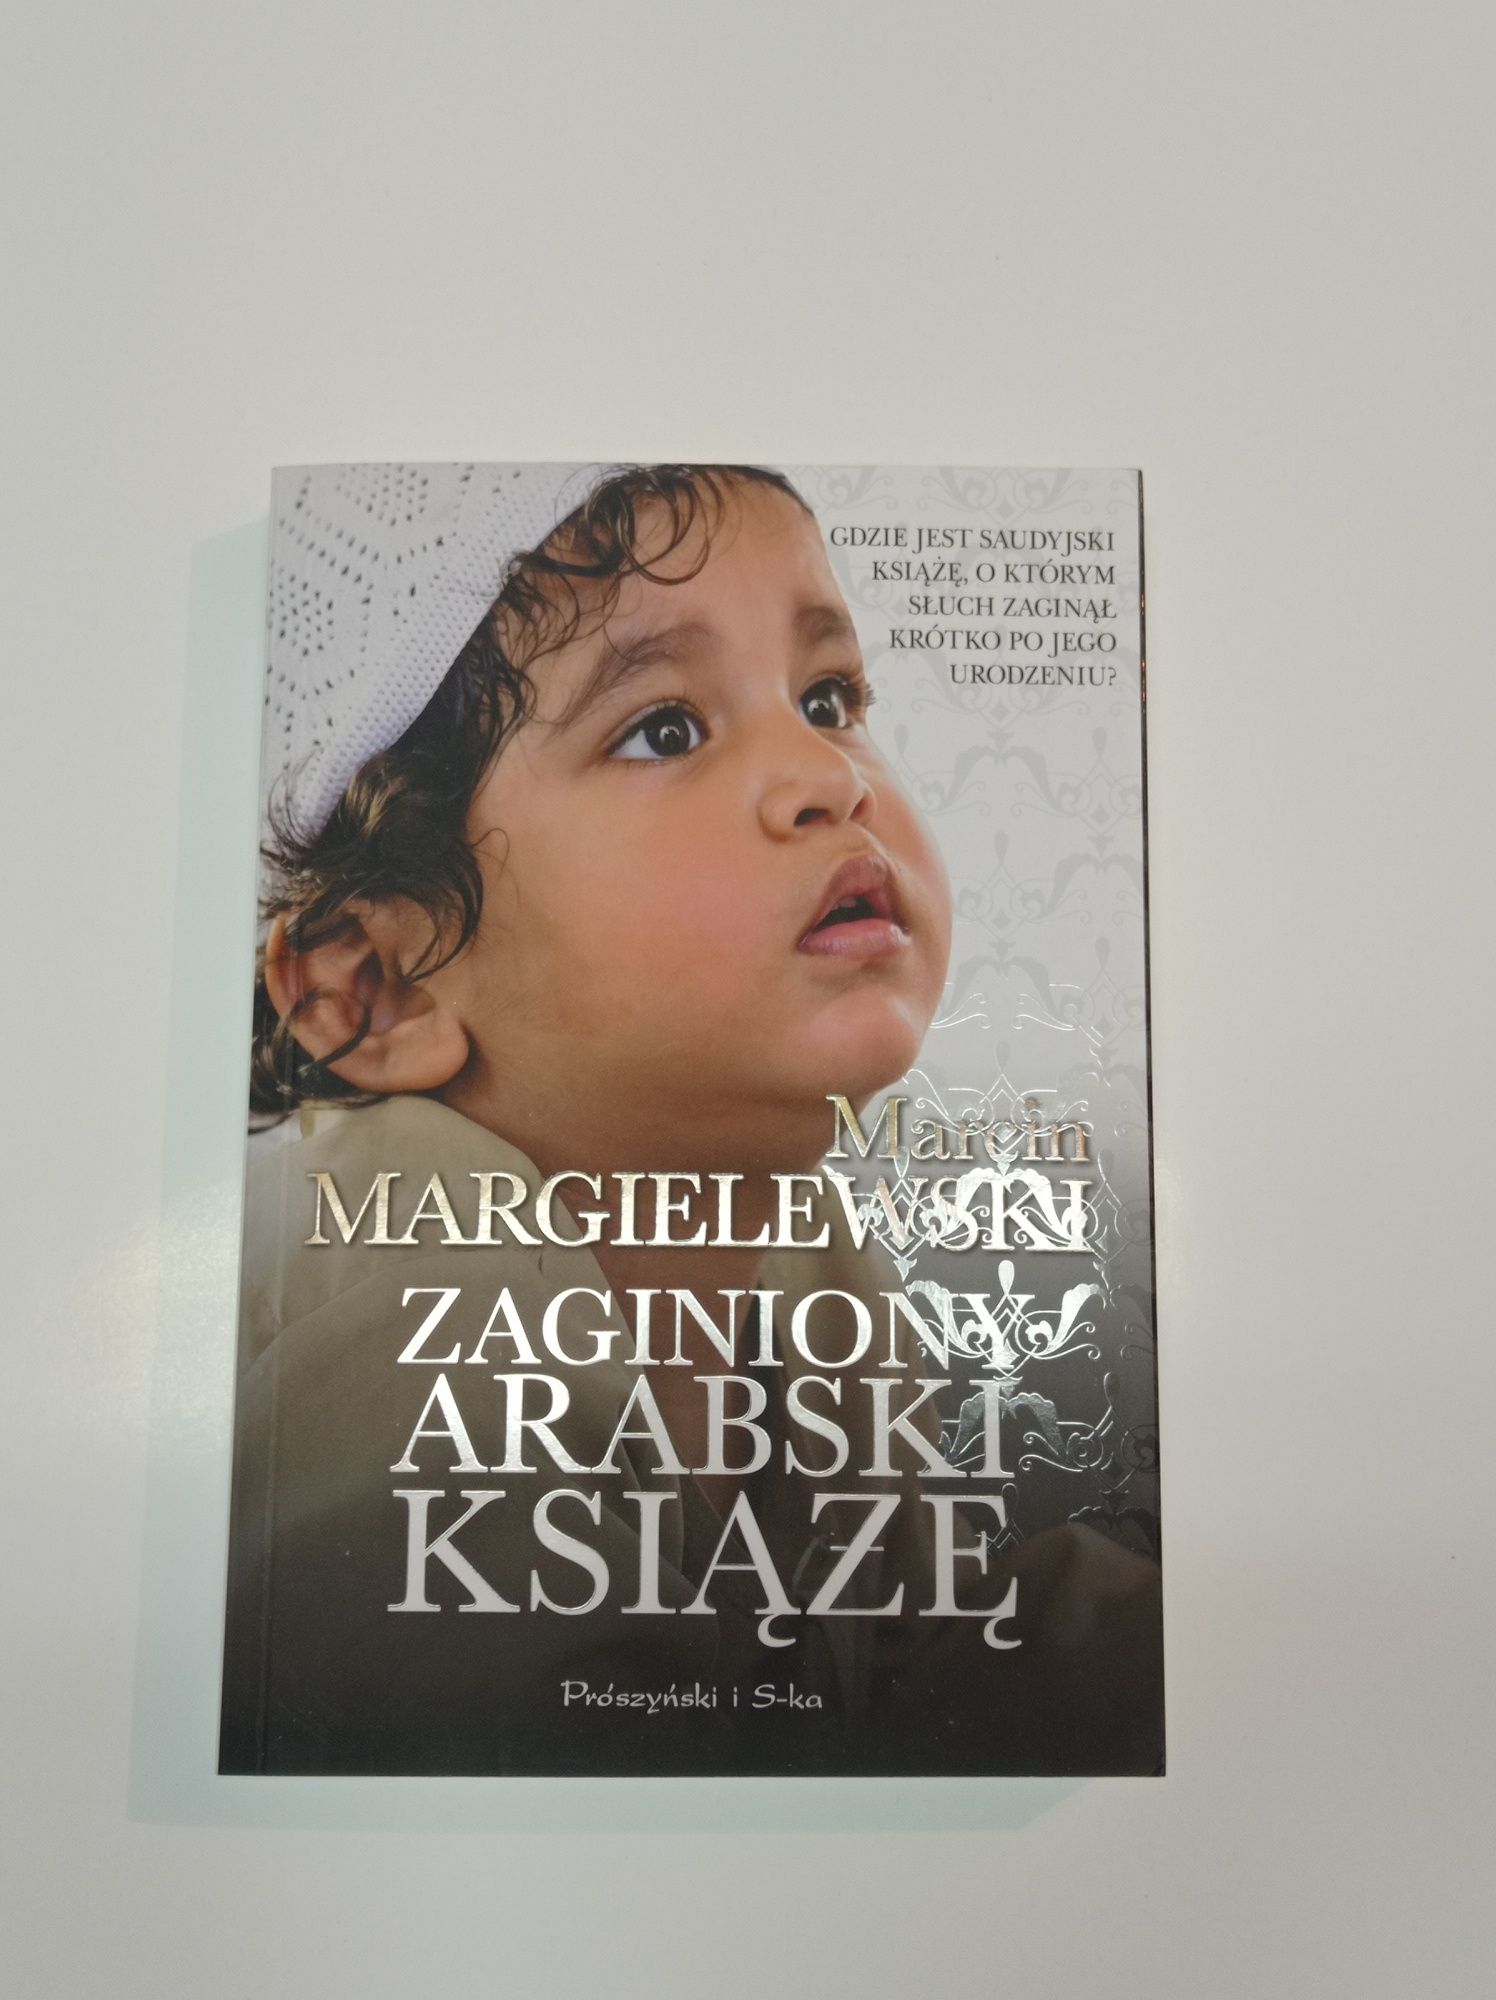 Sprzedam książki Marcina Margielewskiego 4 szt. Dubaj